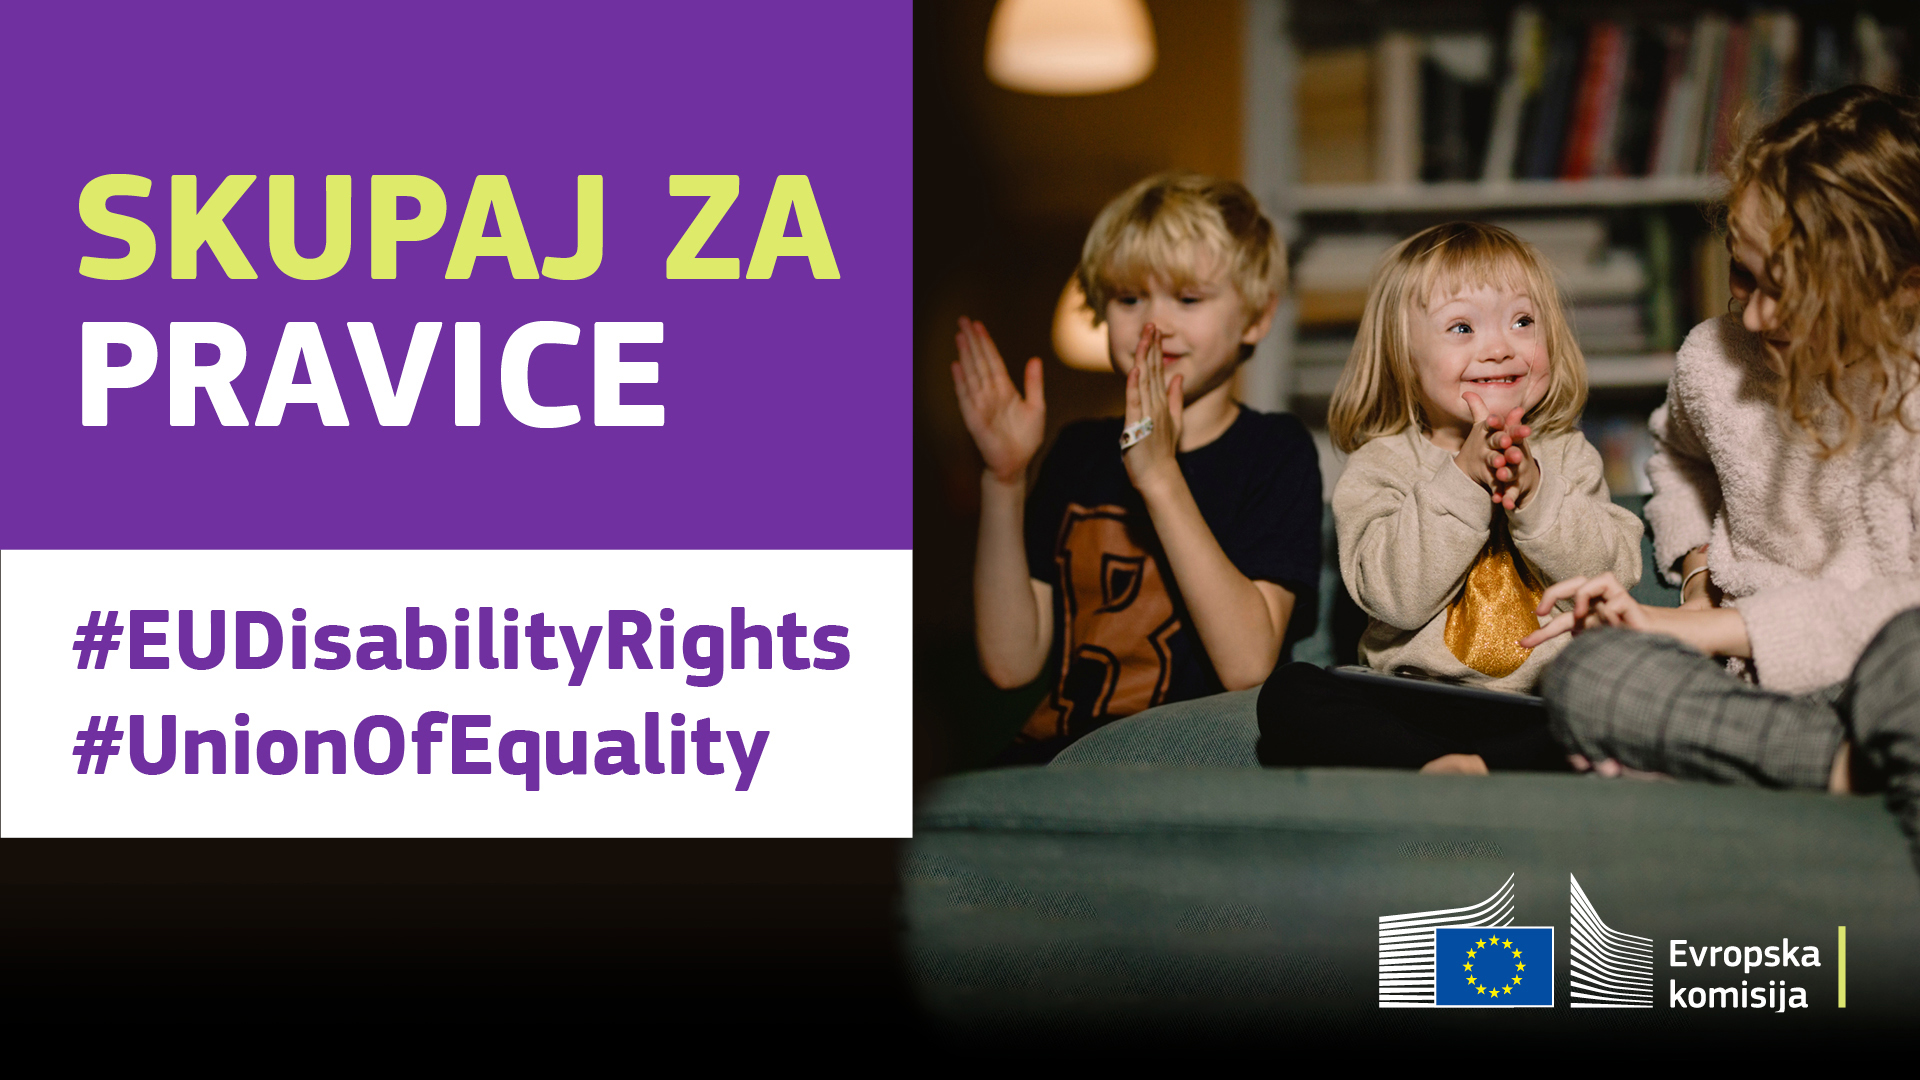 Trije otroci se veselo igrajo. Eden ima downov sindrom. Besedilo: skupaj za pravice, #EUDisabilityRights, #UnionOfEquality.